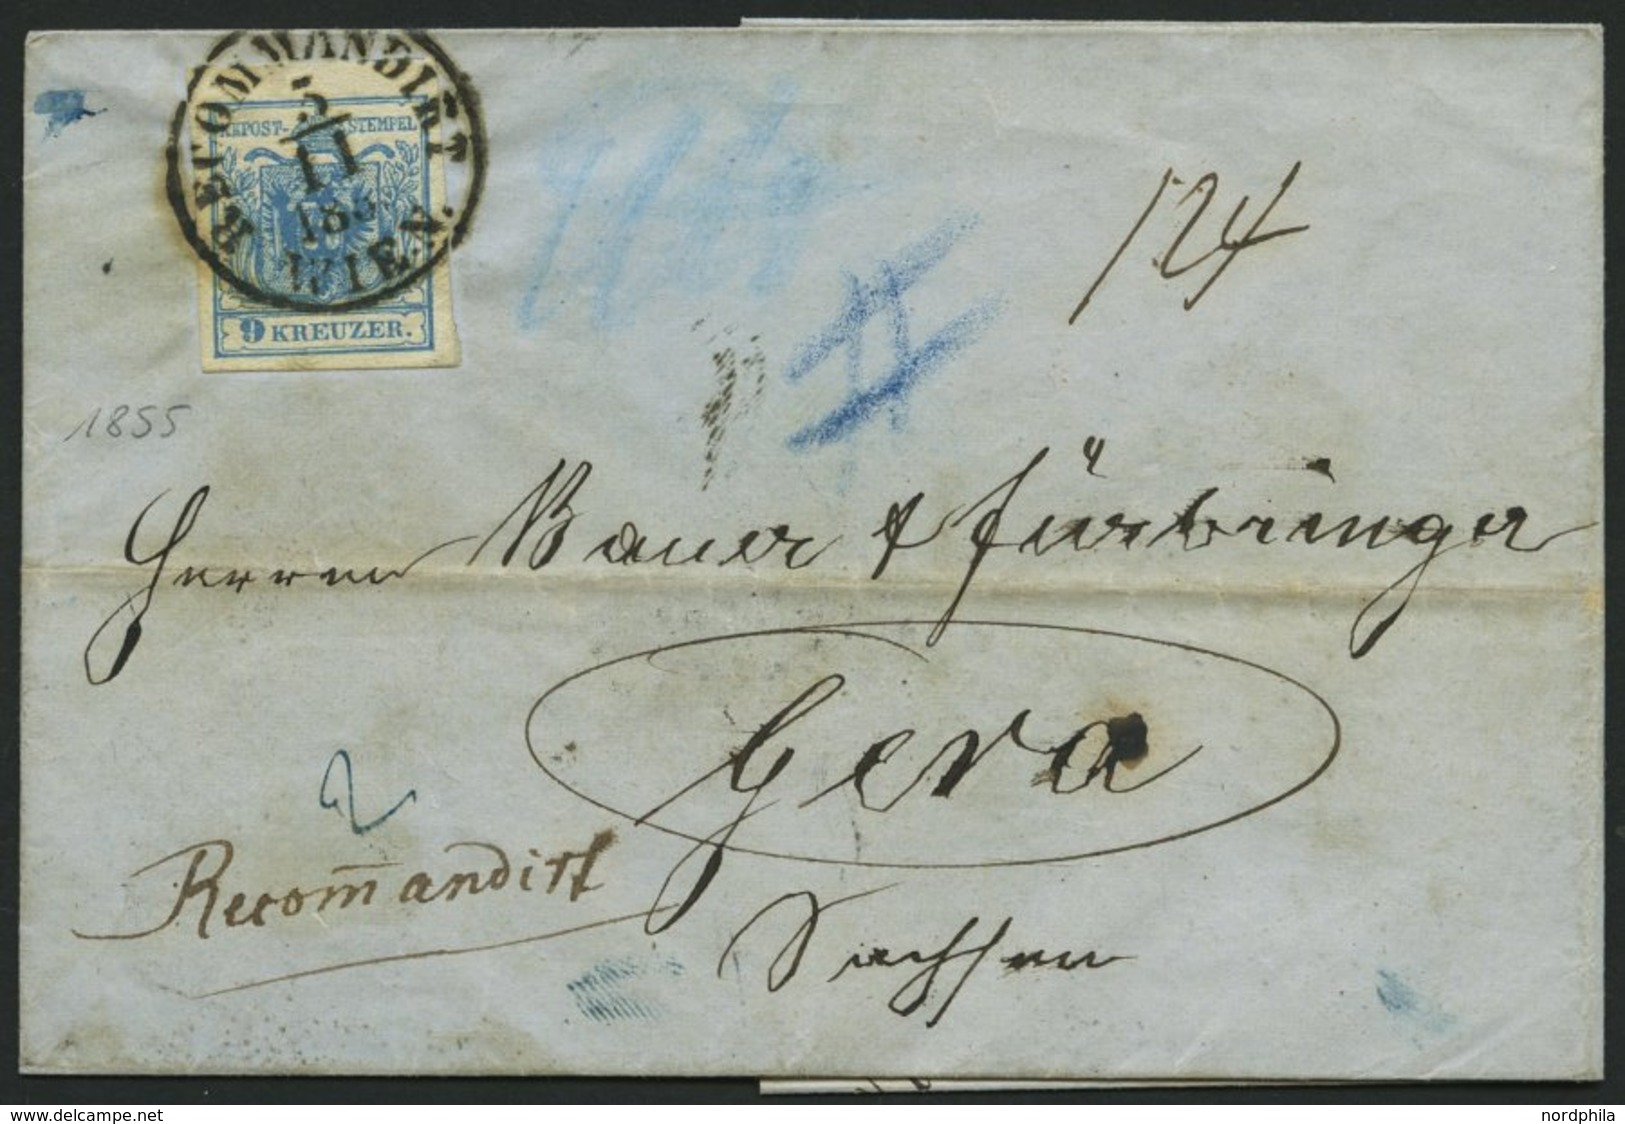 ÖSTERREICH 5Y BRIEF, 1855, 9 Kr. Blau, Maschinenpapier, Type IIIb, K1 RECOMMANDIRT WIEN, Rückseitig Defekte 6 Kr., Prach - Used Stamps